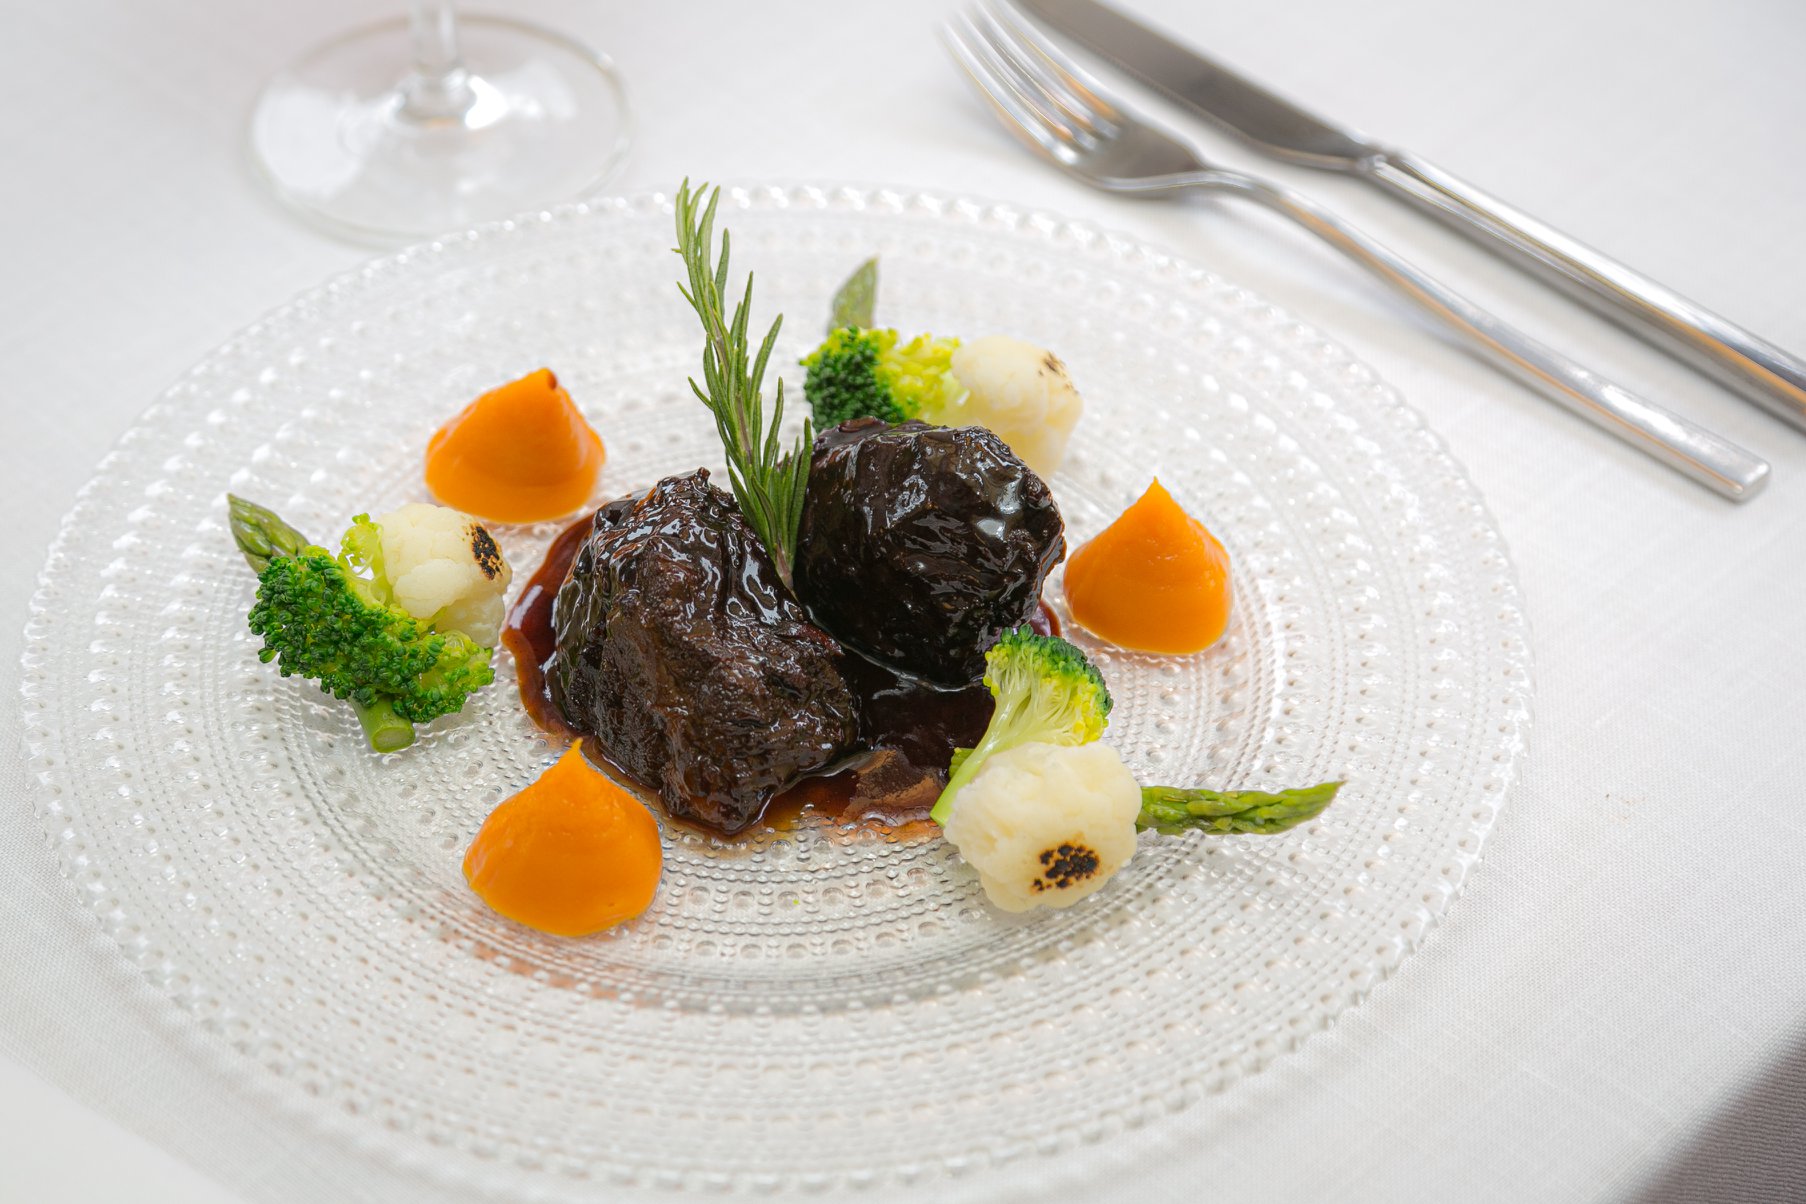 Restaurante de cocina mediterránea, especializado en pescados y carnes a la parrilla como carrilleras de ibéricos glaseadas.                    